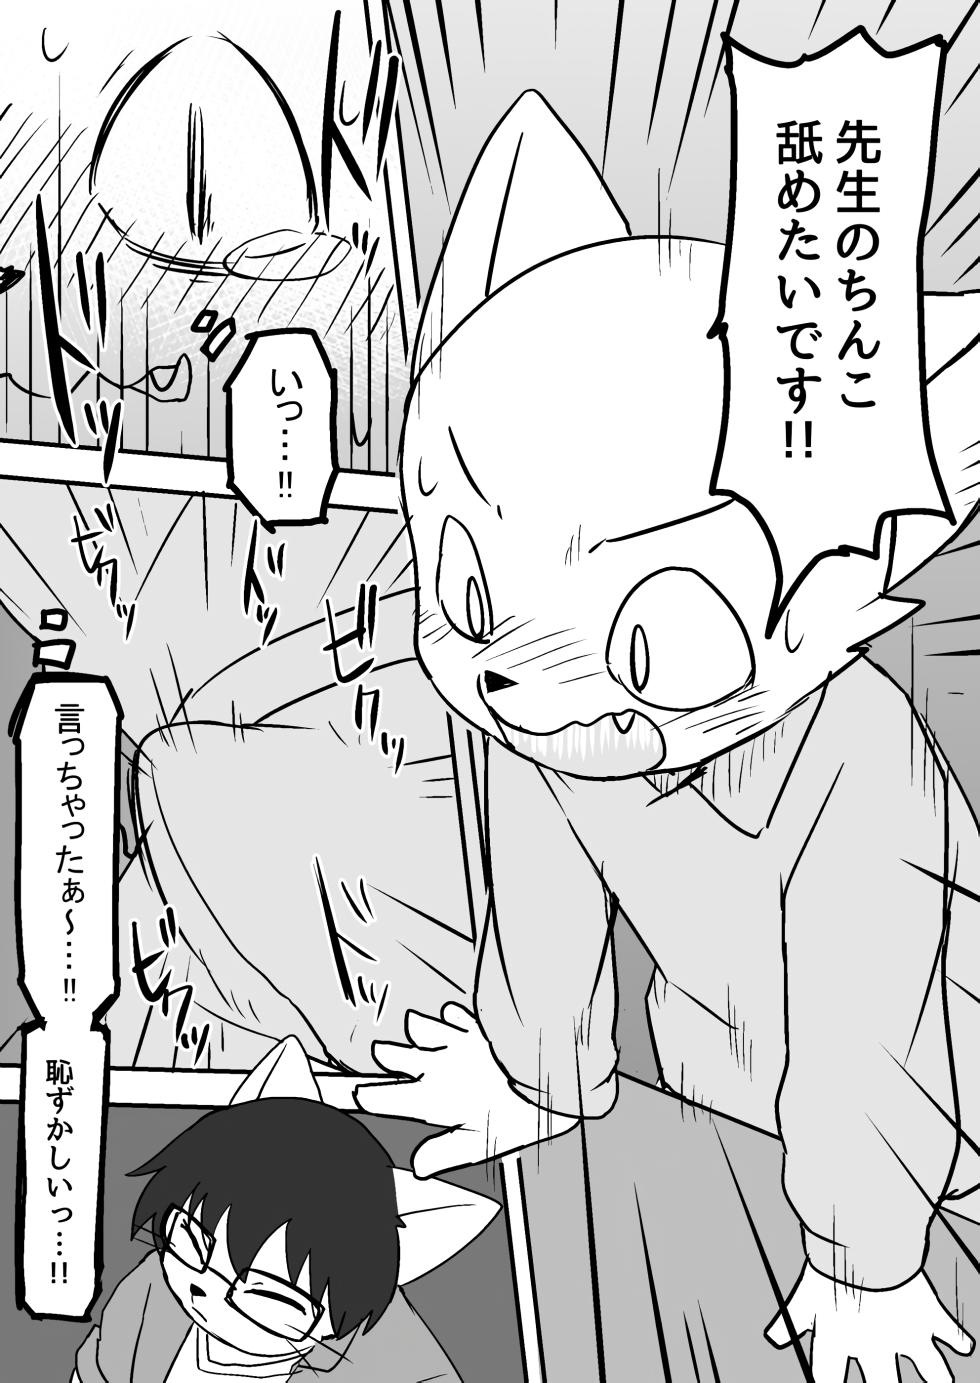 Manmosu Marimo - Sensei Story #1 (Raw) - Page 11